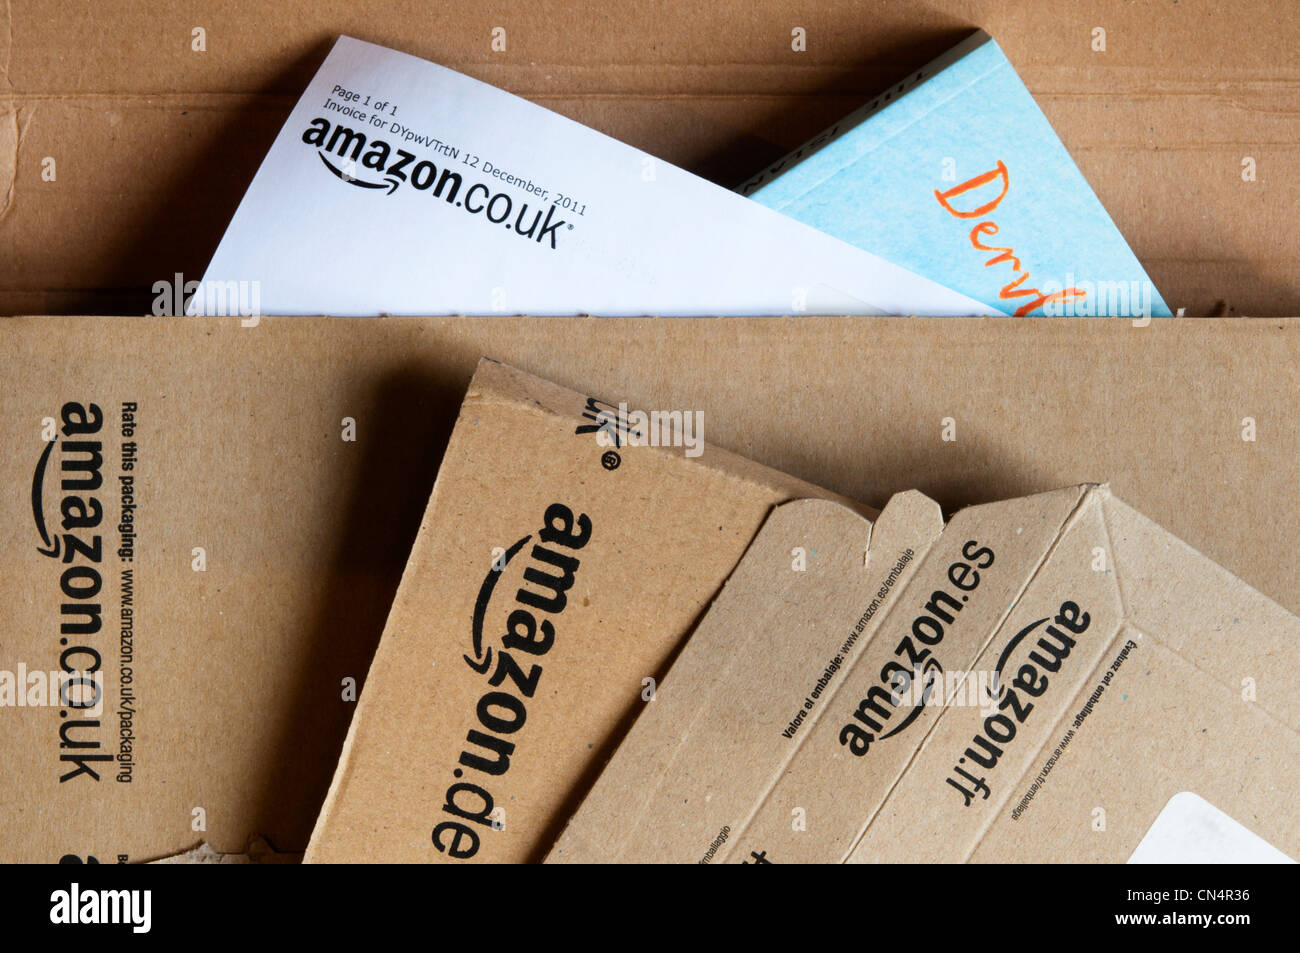 Amazon verpackung -Fotos und -Bildmaterial in hoher Auflösung – Alamy